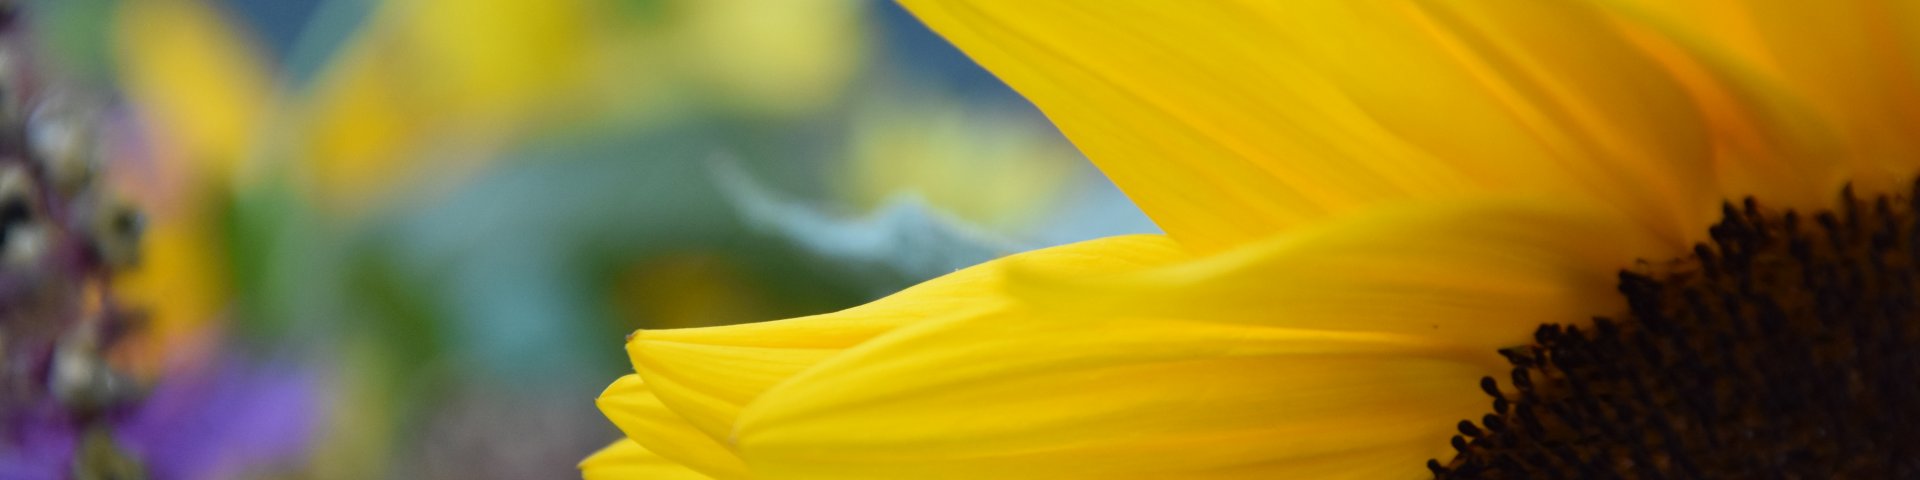 Sunflower, close-up, päevalill